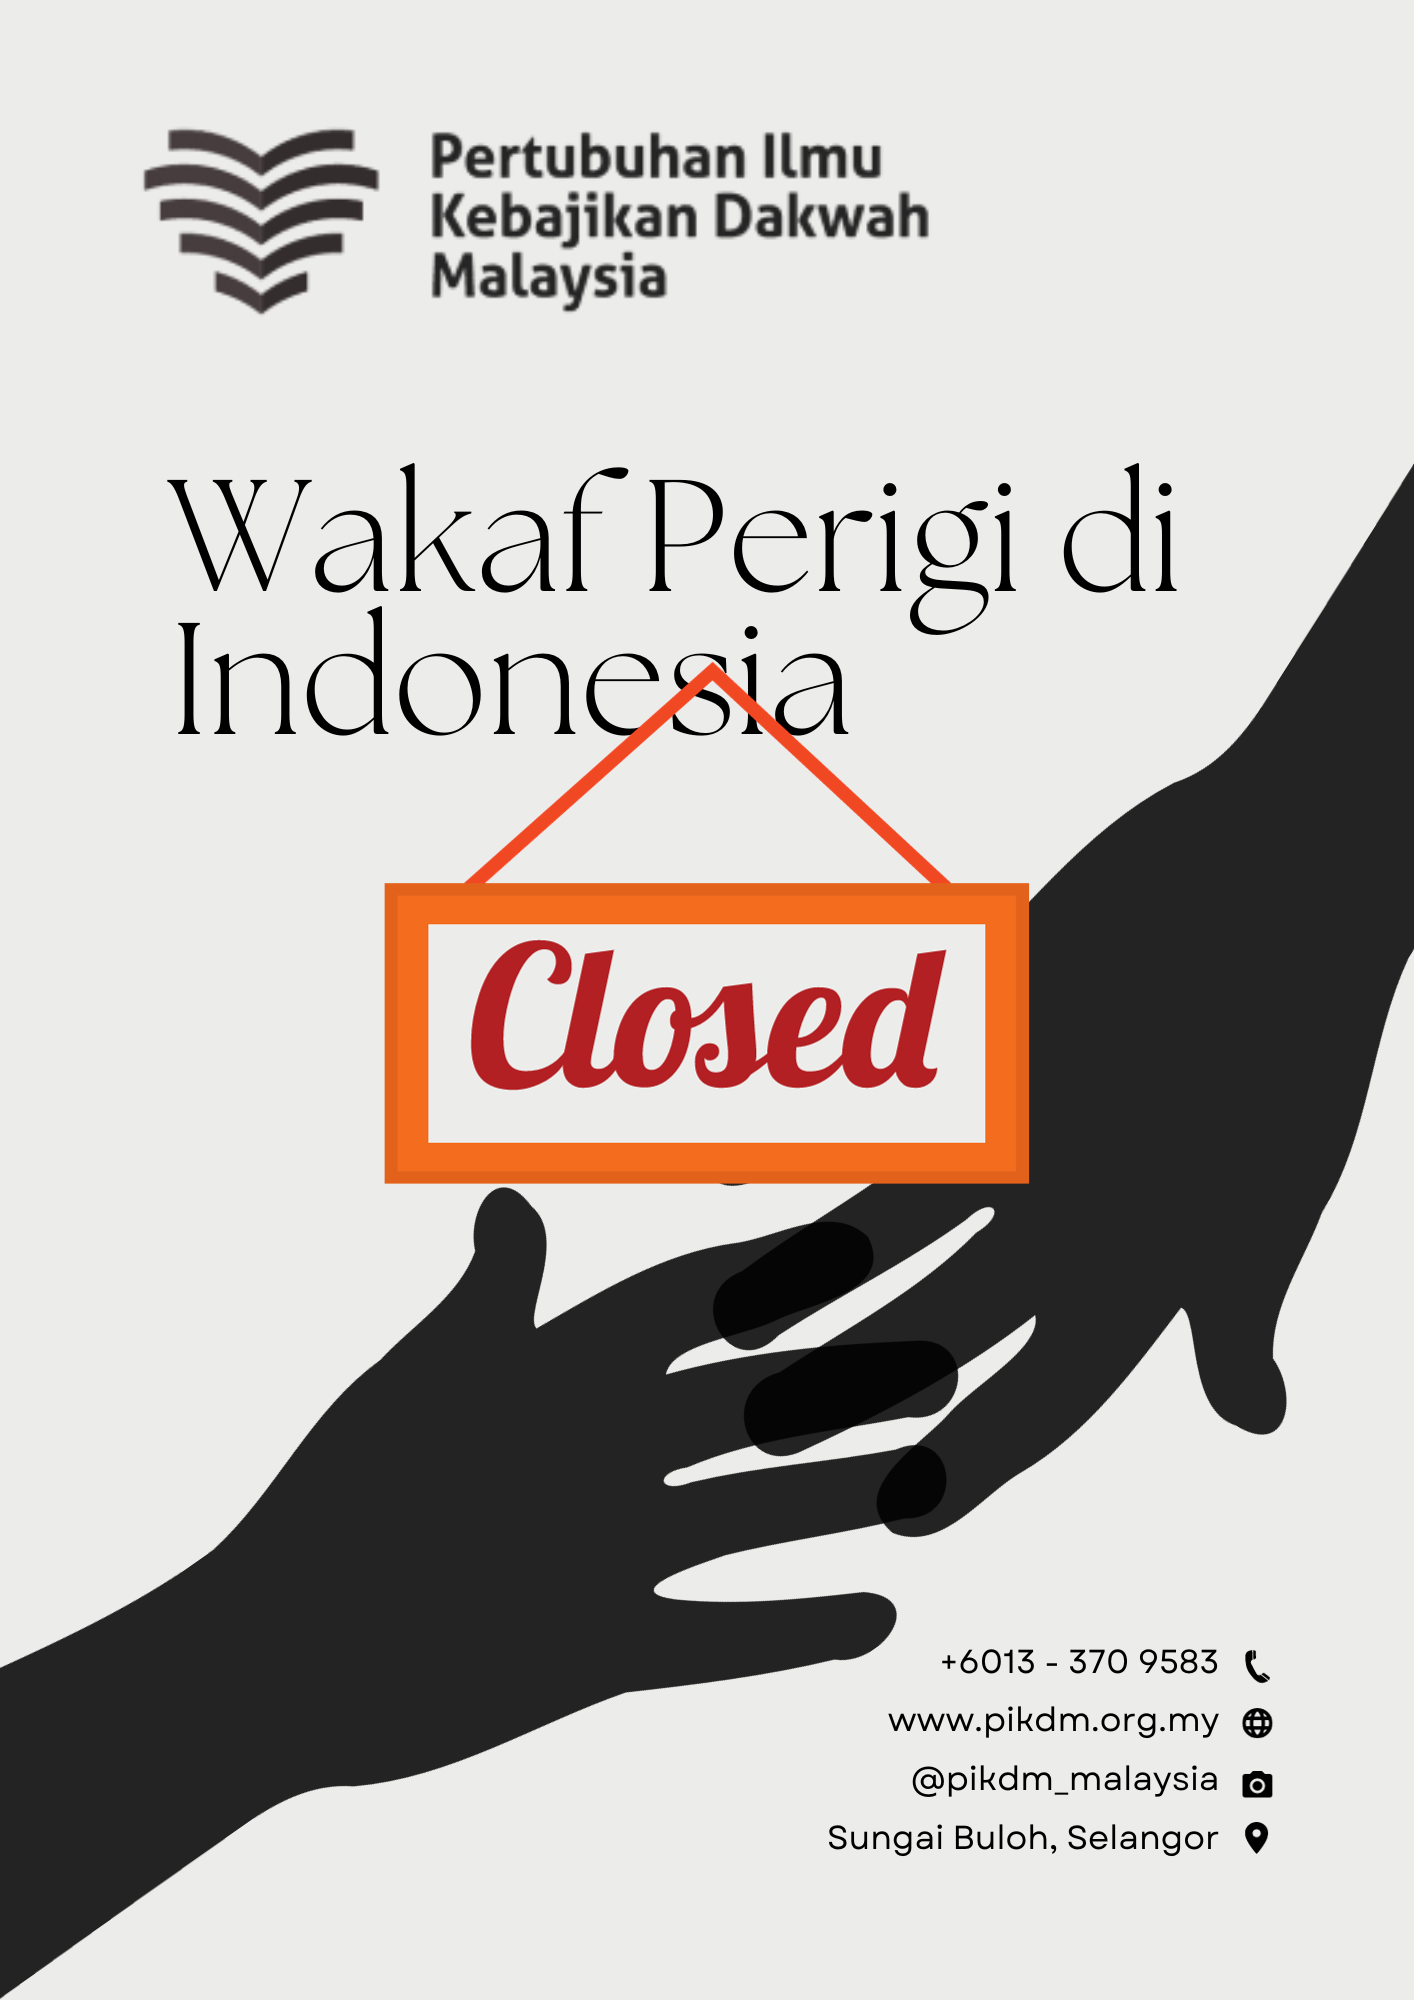 Wakaf Perigi Di Indonesia Closed